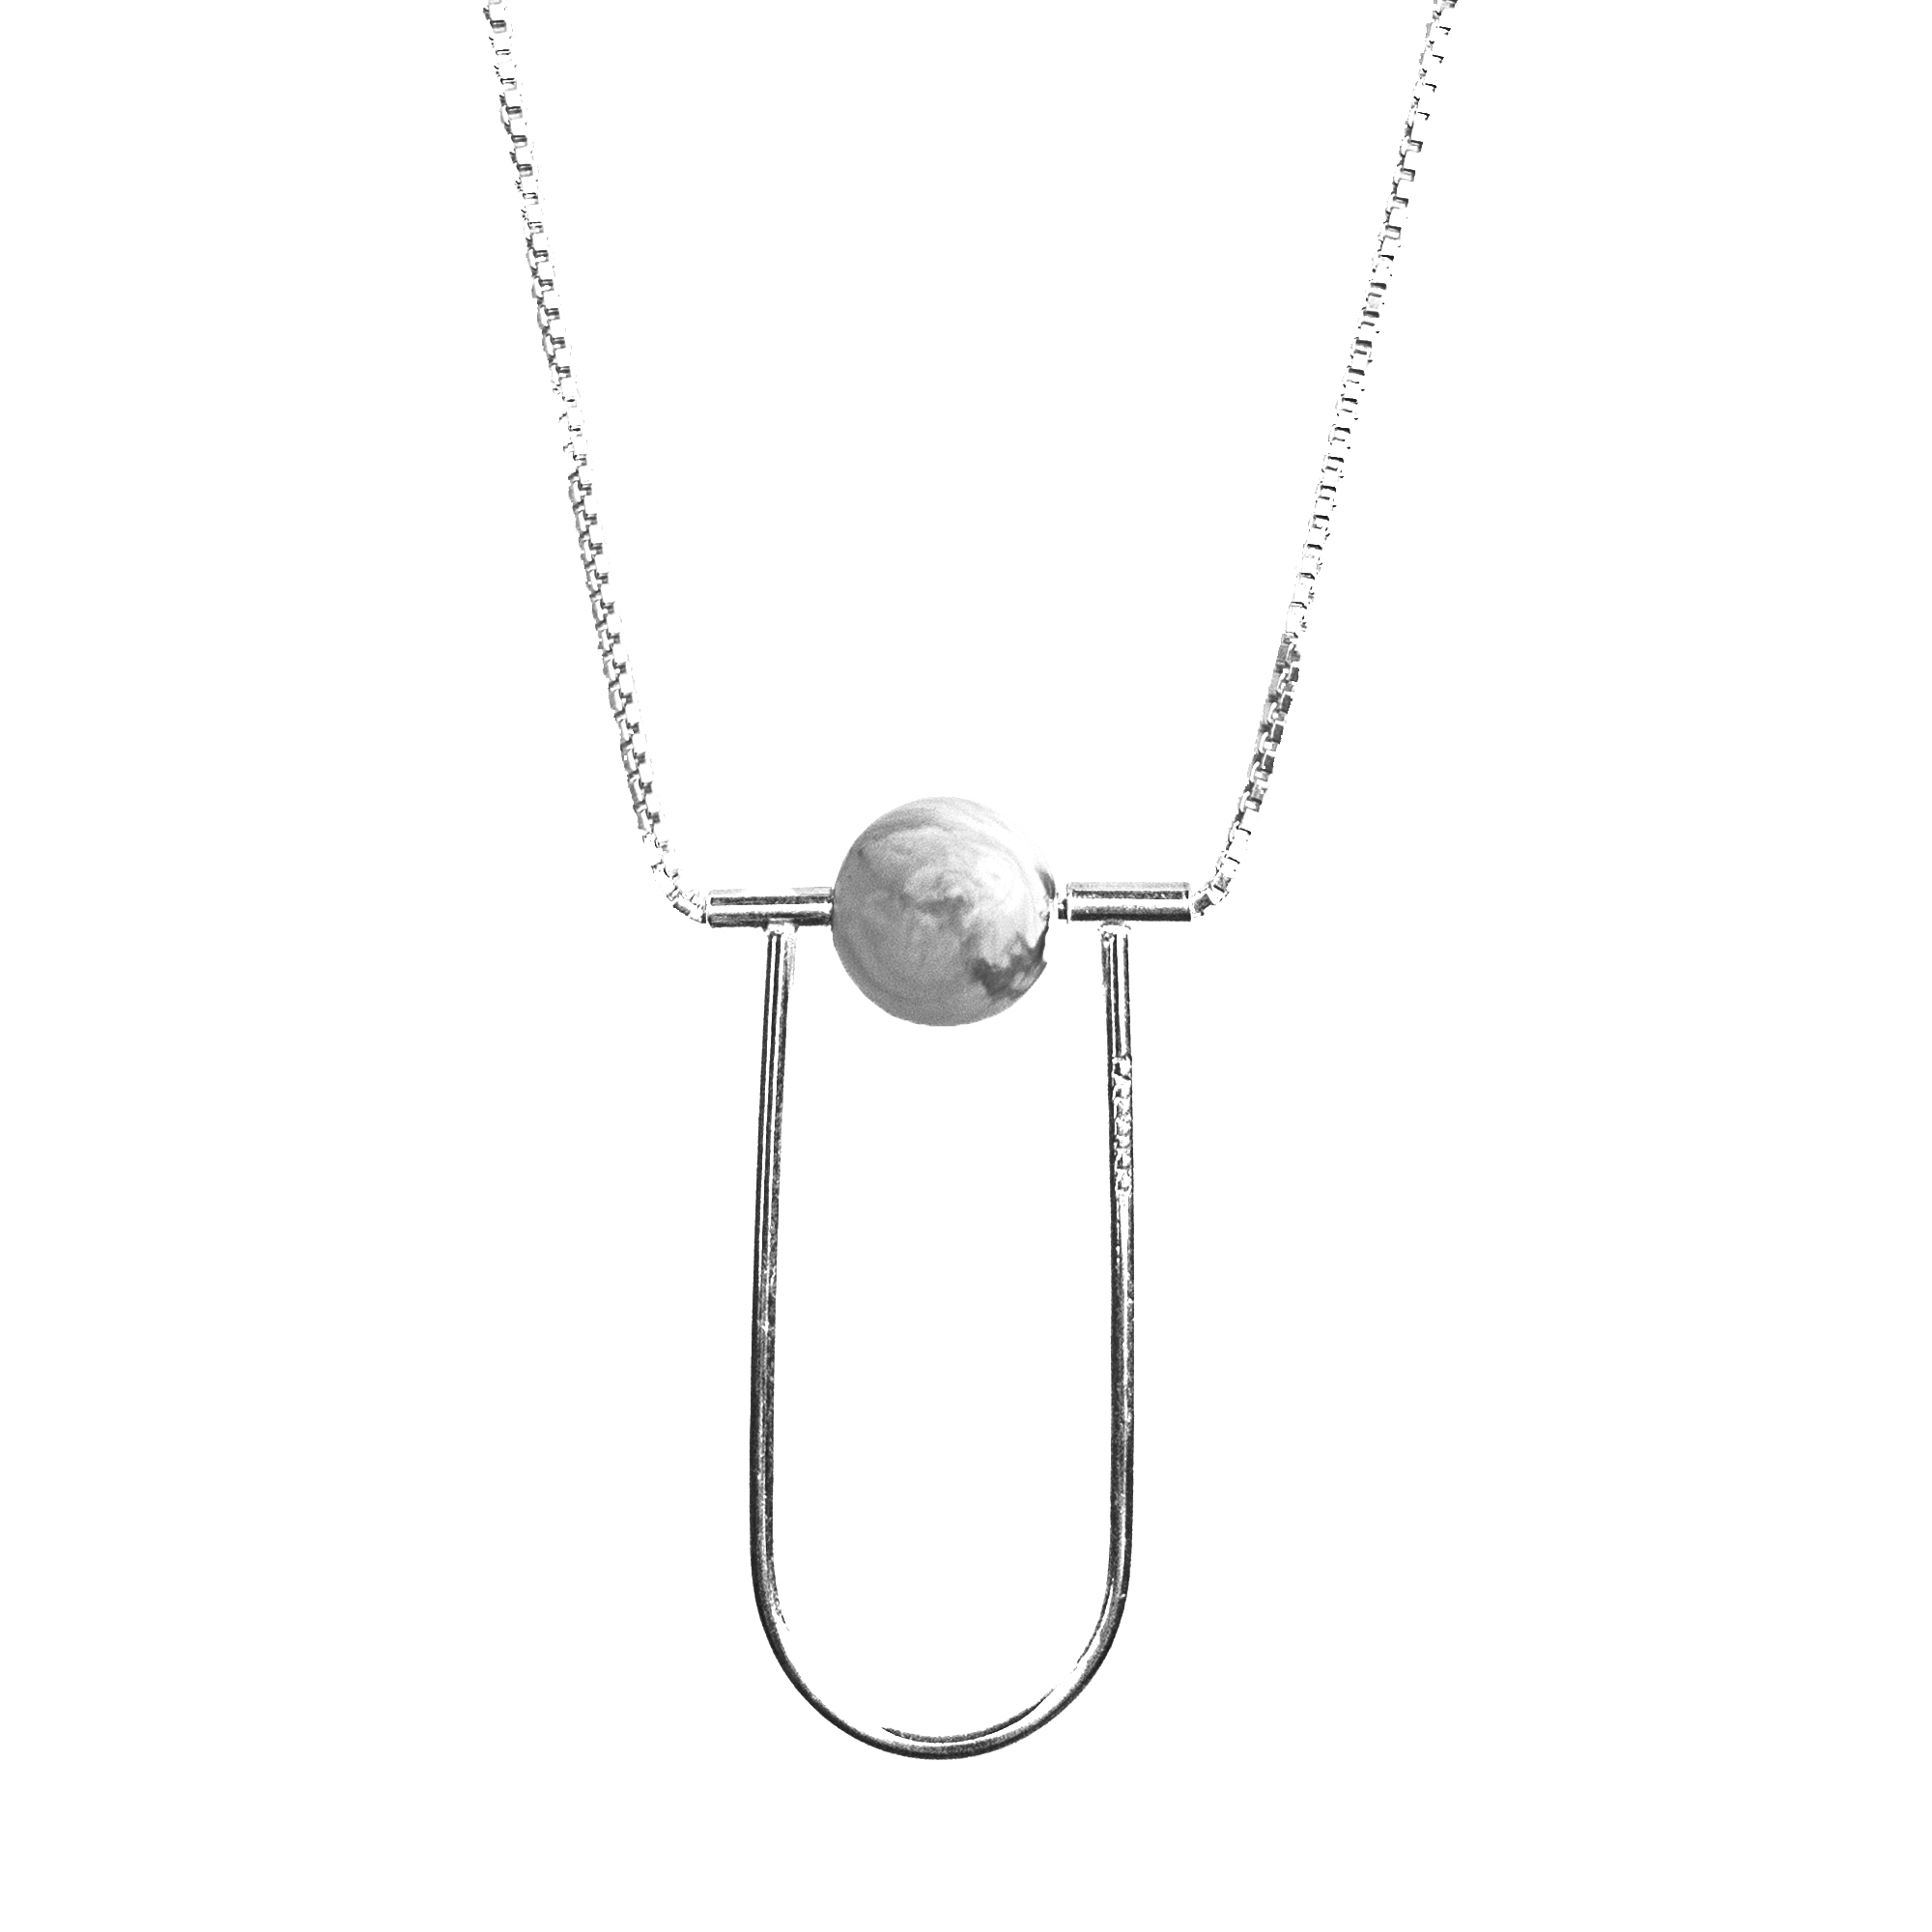 Halsband Neutra Howlite silverproduktzoombild #1